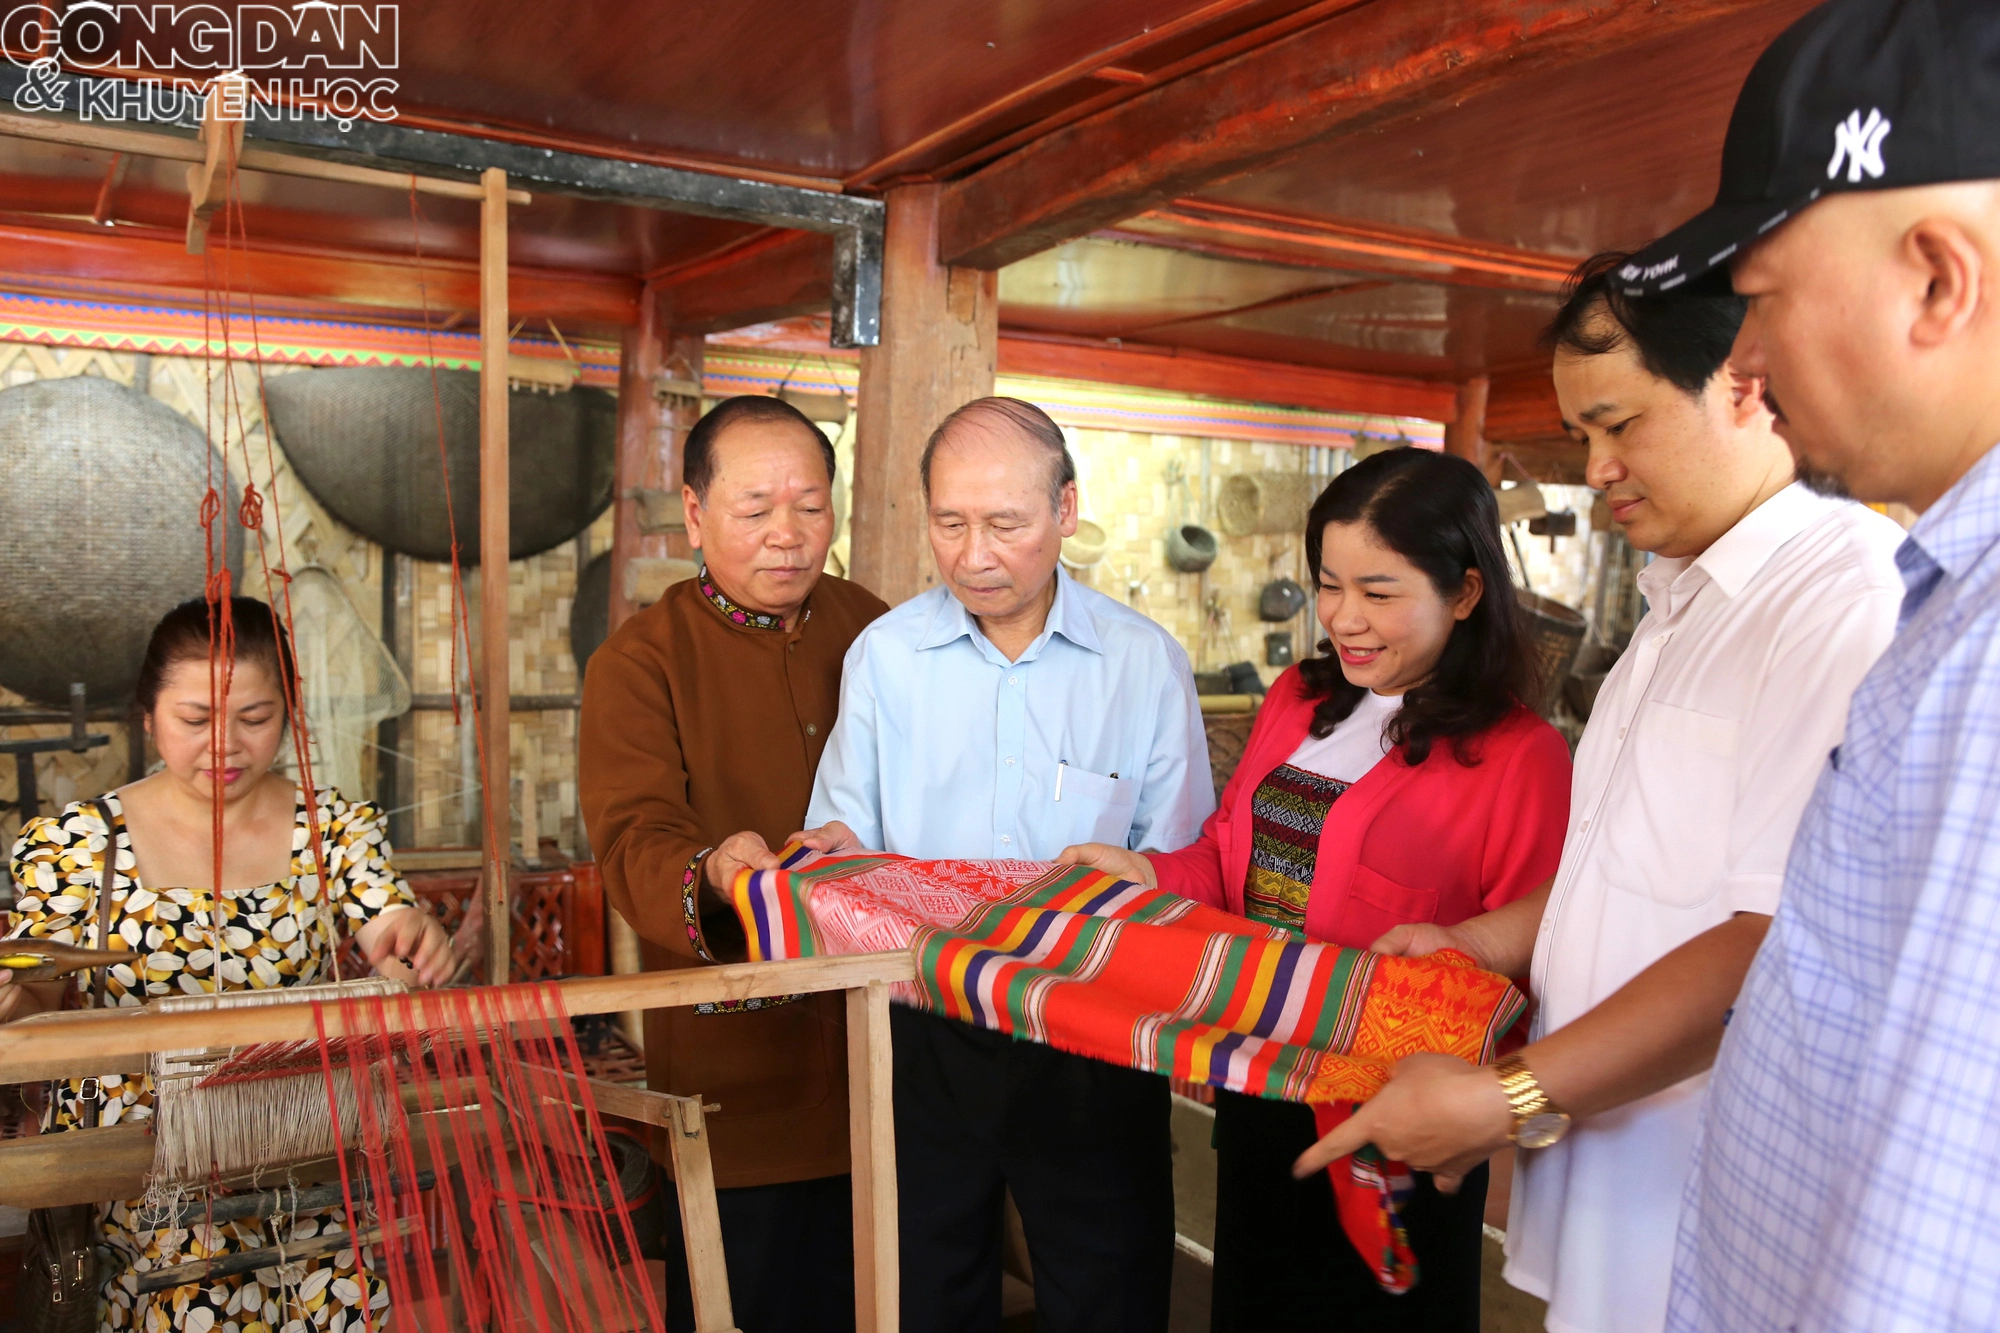 Bảo tàng của nghệ nhân Bùi Thanh Bình lưu giữ hơn 6.000 hiện vật văn hóa Mường - Ảnh 9.